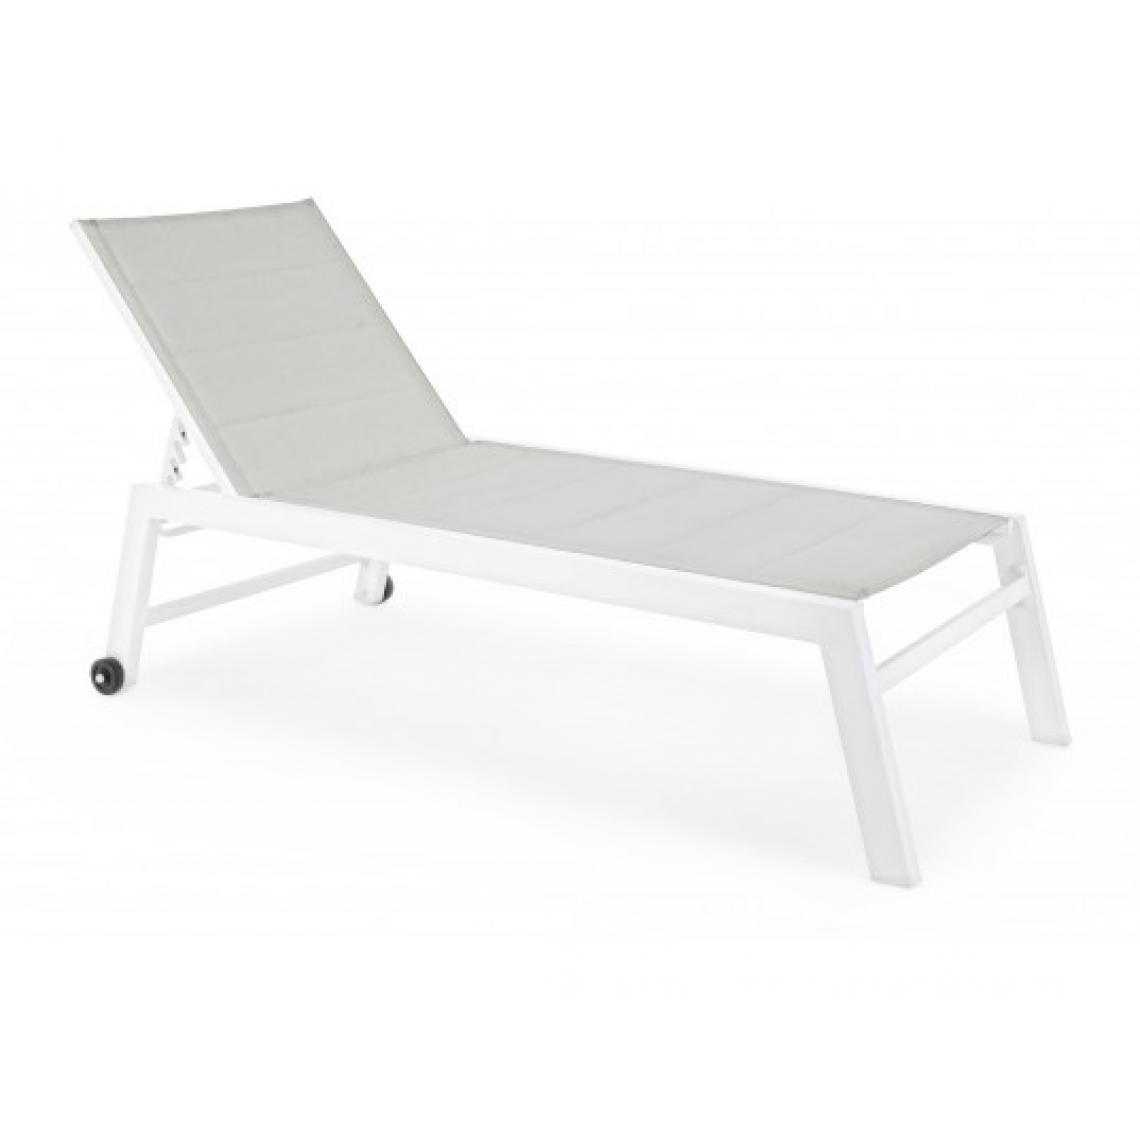 Bizzotto - Bain de soleil Bain de soleil Hilde blanc - Transats, chaises longues